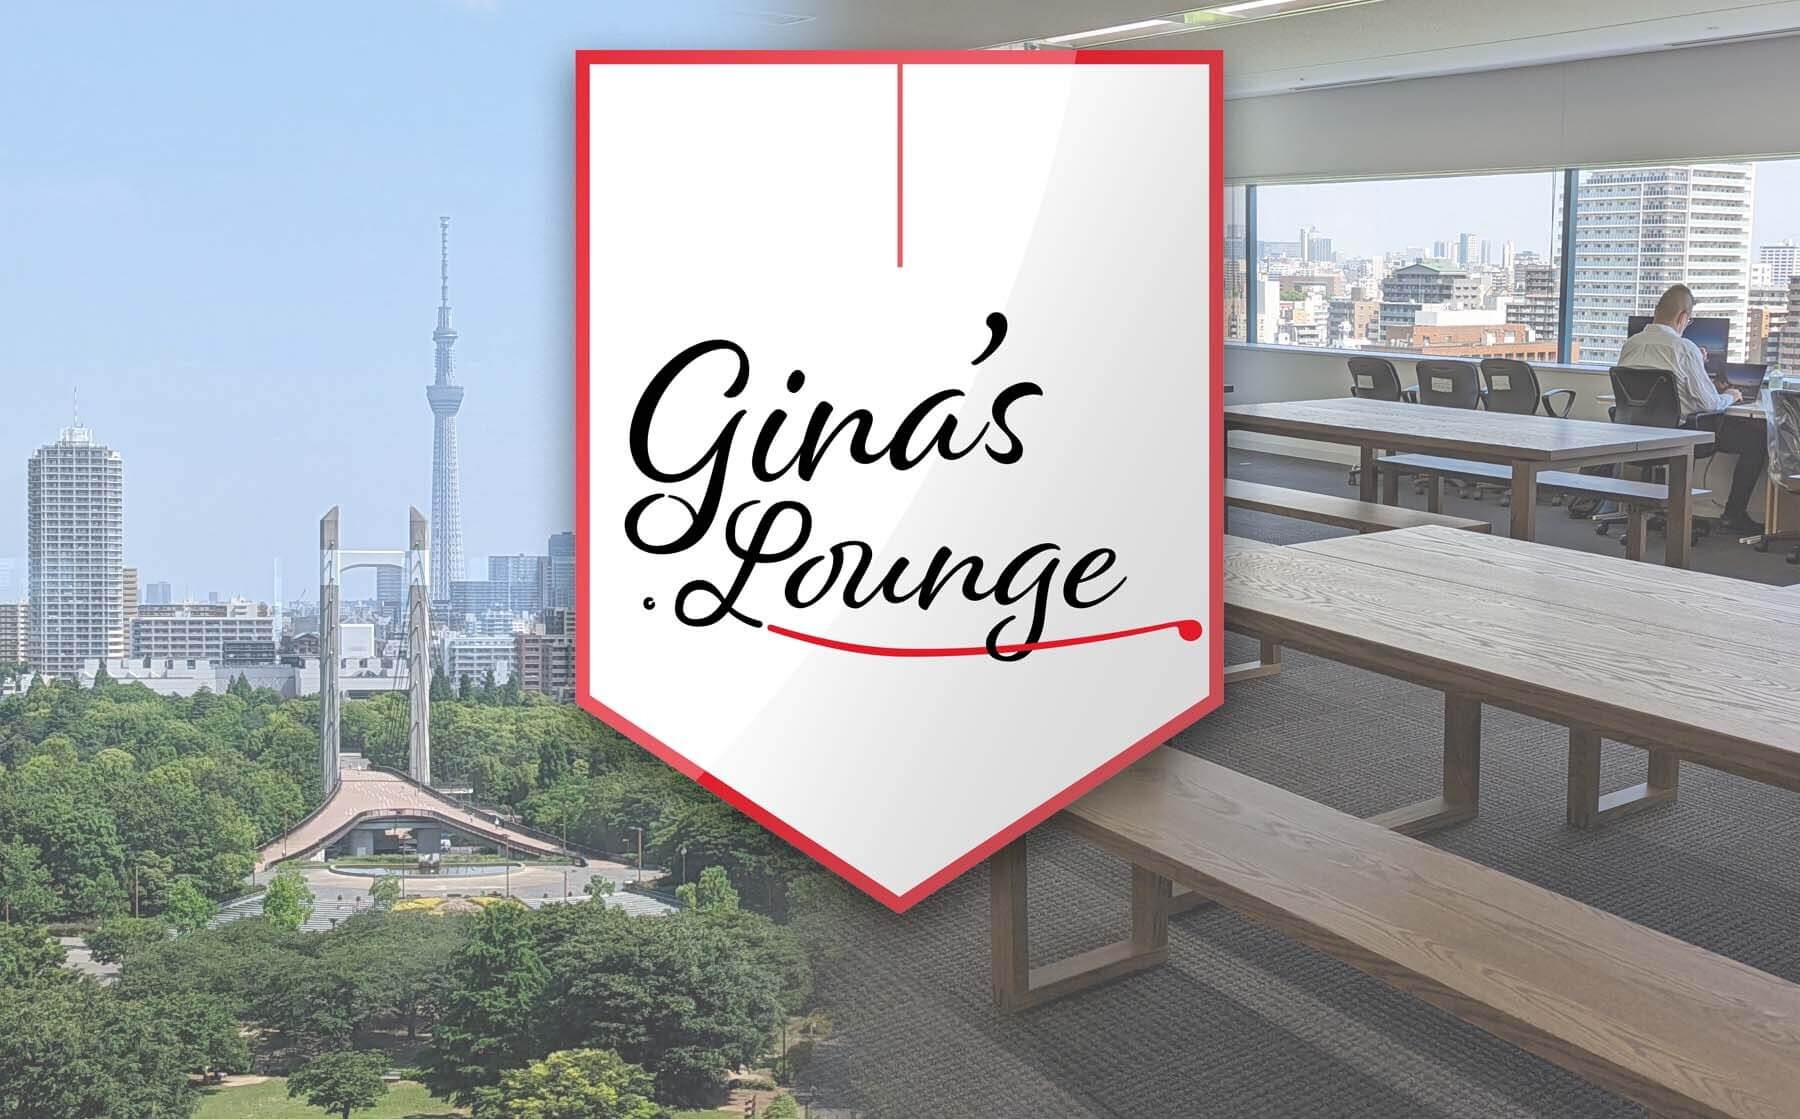 社員食堂「Gina’s Lounge」の導入に至った背景